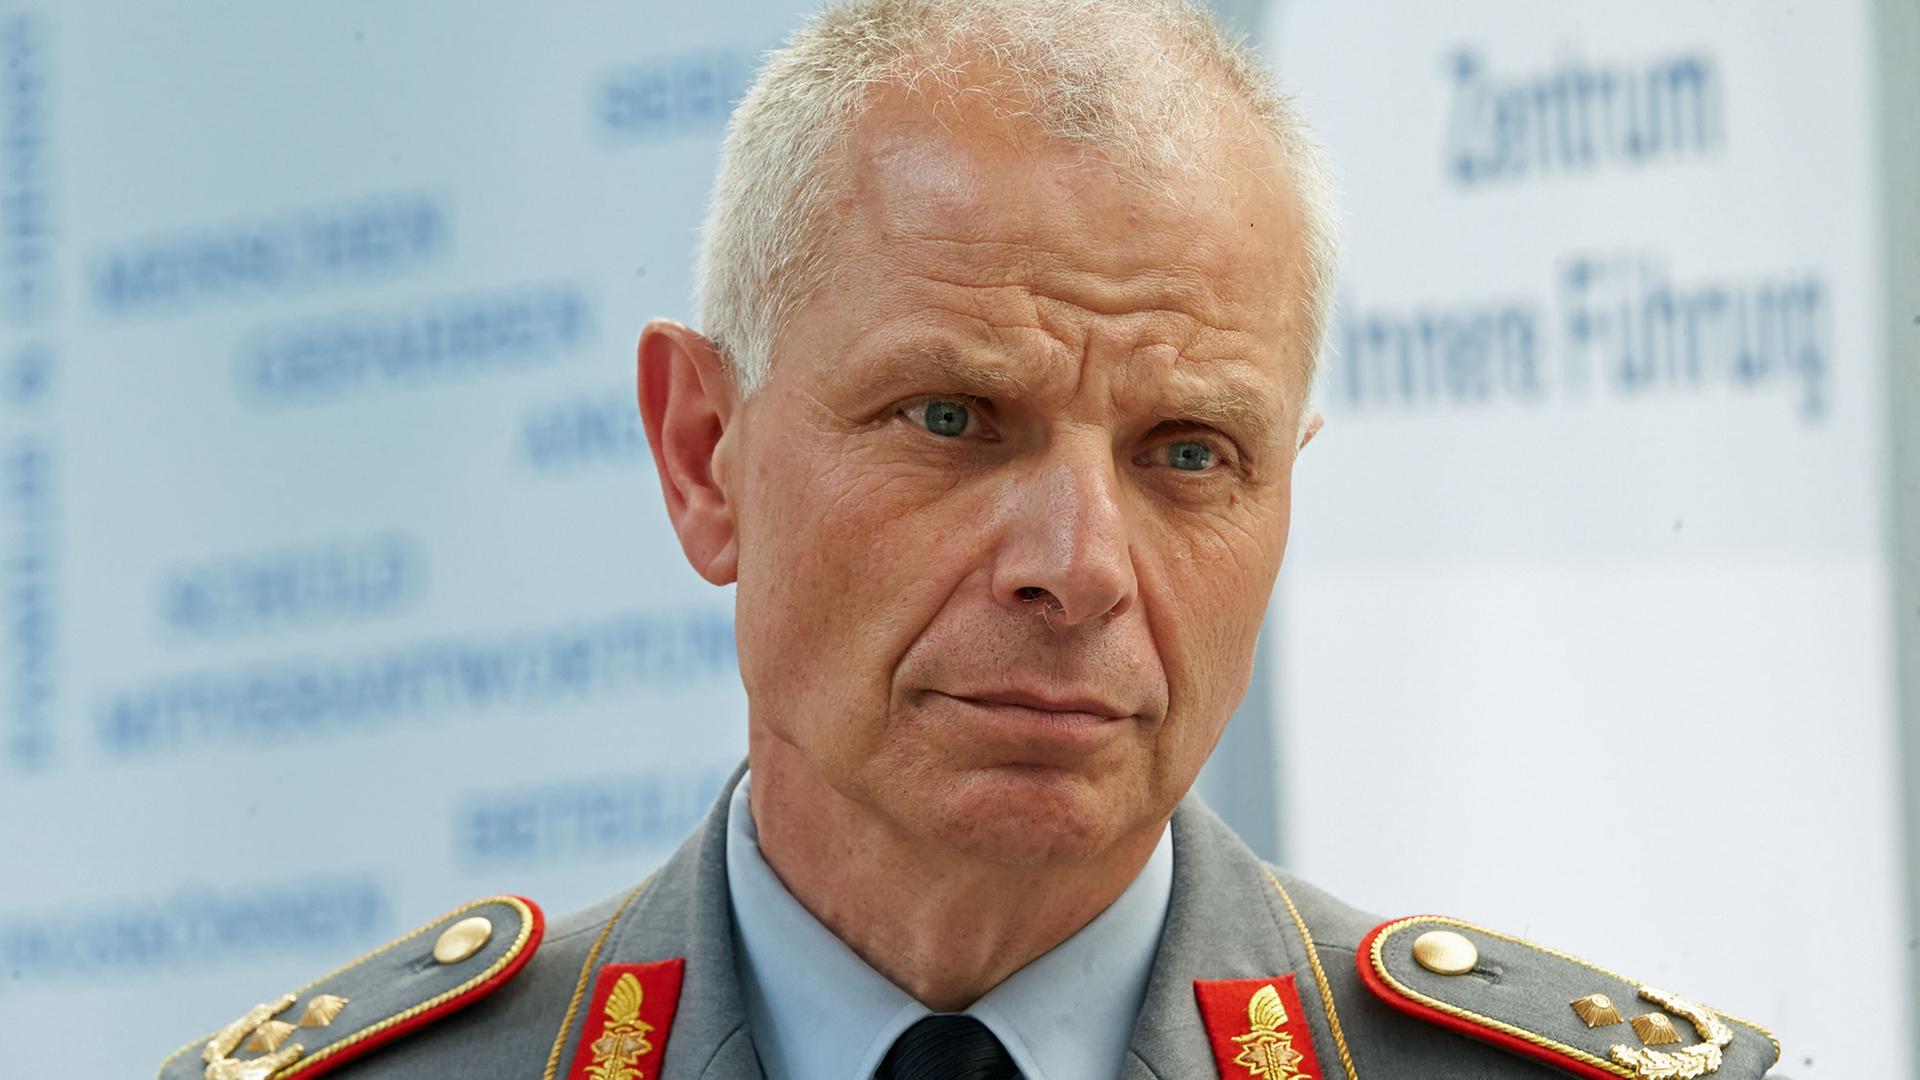 Generalmajor Jürgen Weigt, Kommandeur des Zentrum Innere Führung der Bundeswehr in Koblenz (Rheinland-Pfalz) aufgenommen am 15.04.2015.